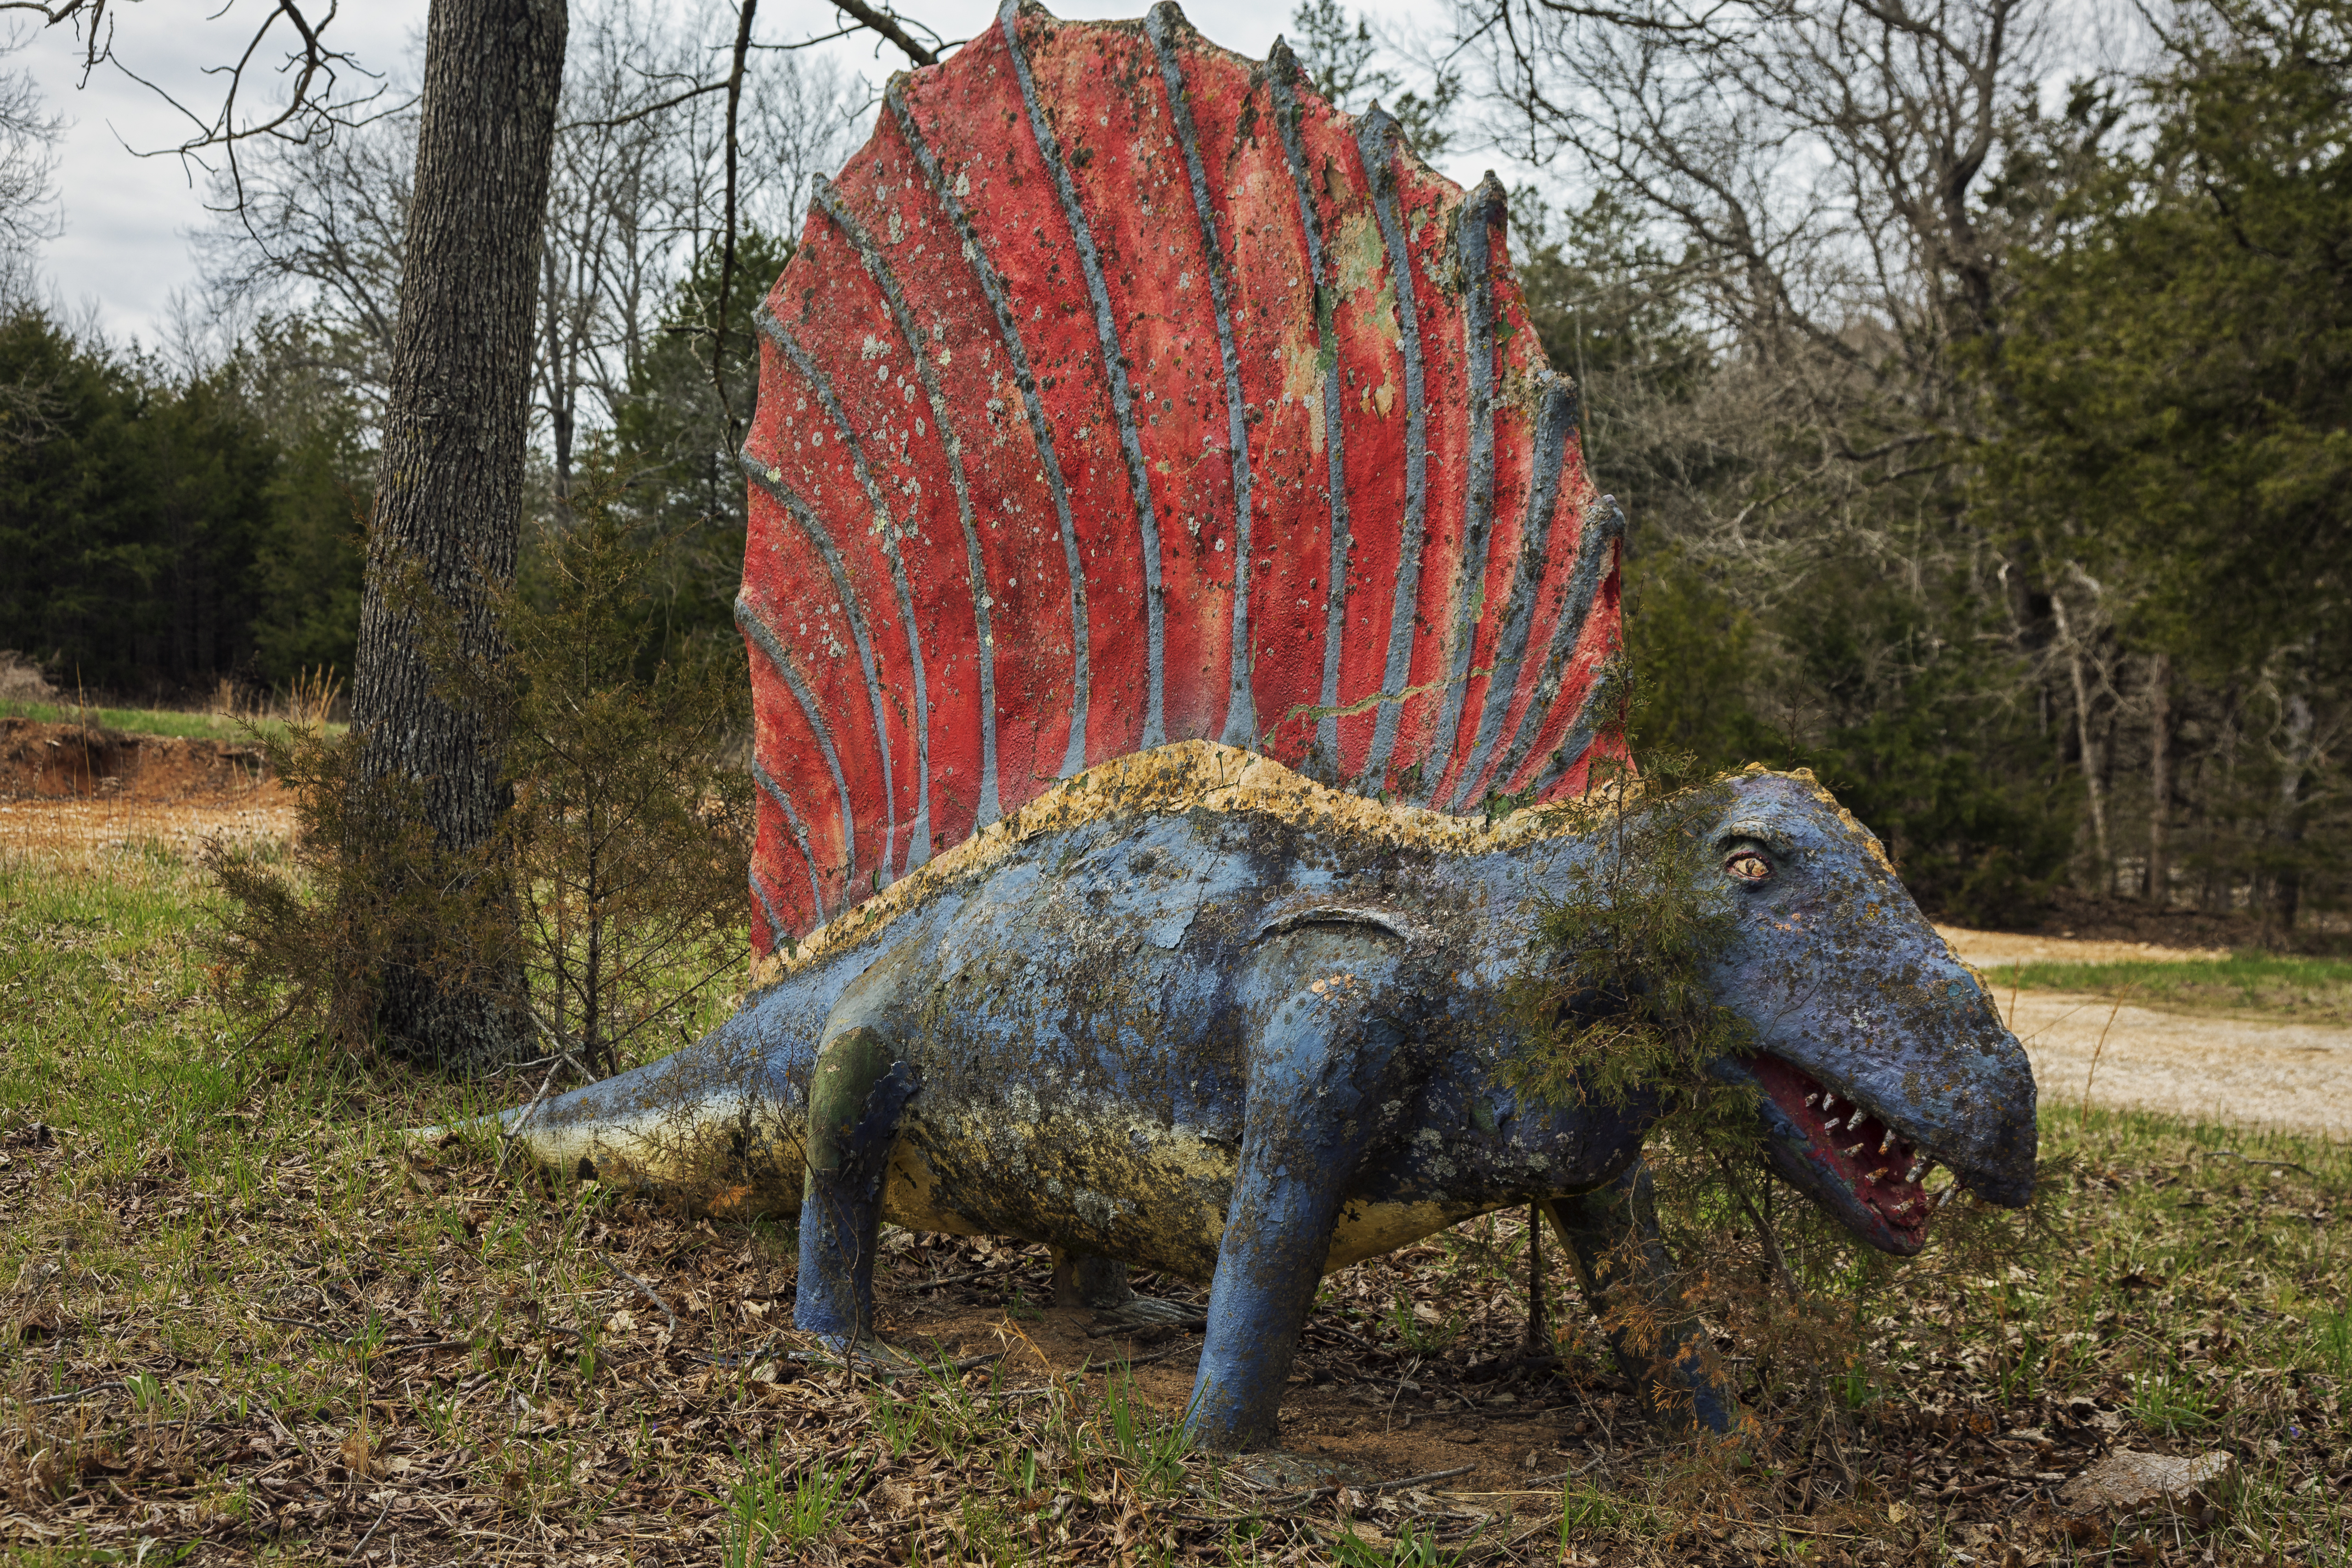 Dinosaur World in Beaver, Arkansas, war einst ein Touristen-Hotspot mit etwa 100 lebensgroßen Dinosaurierskulpturen